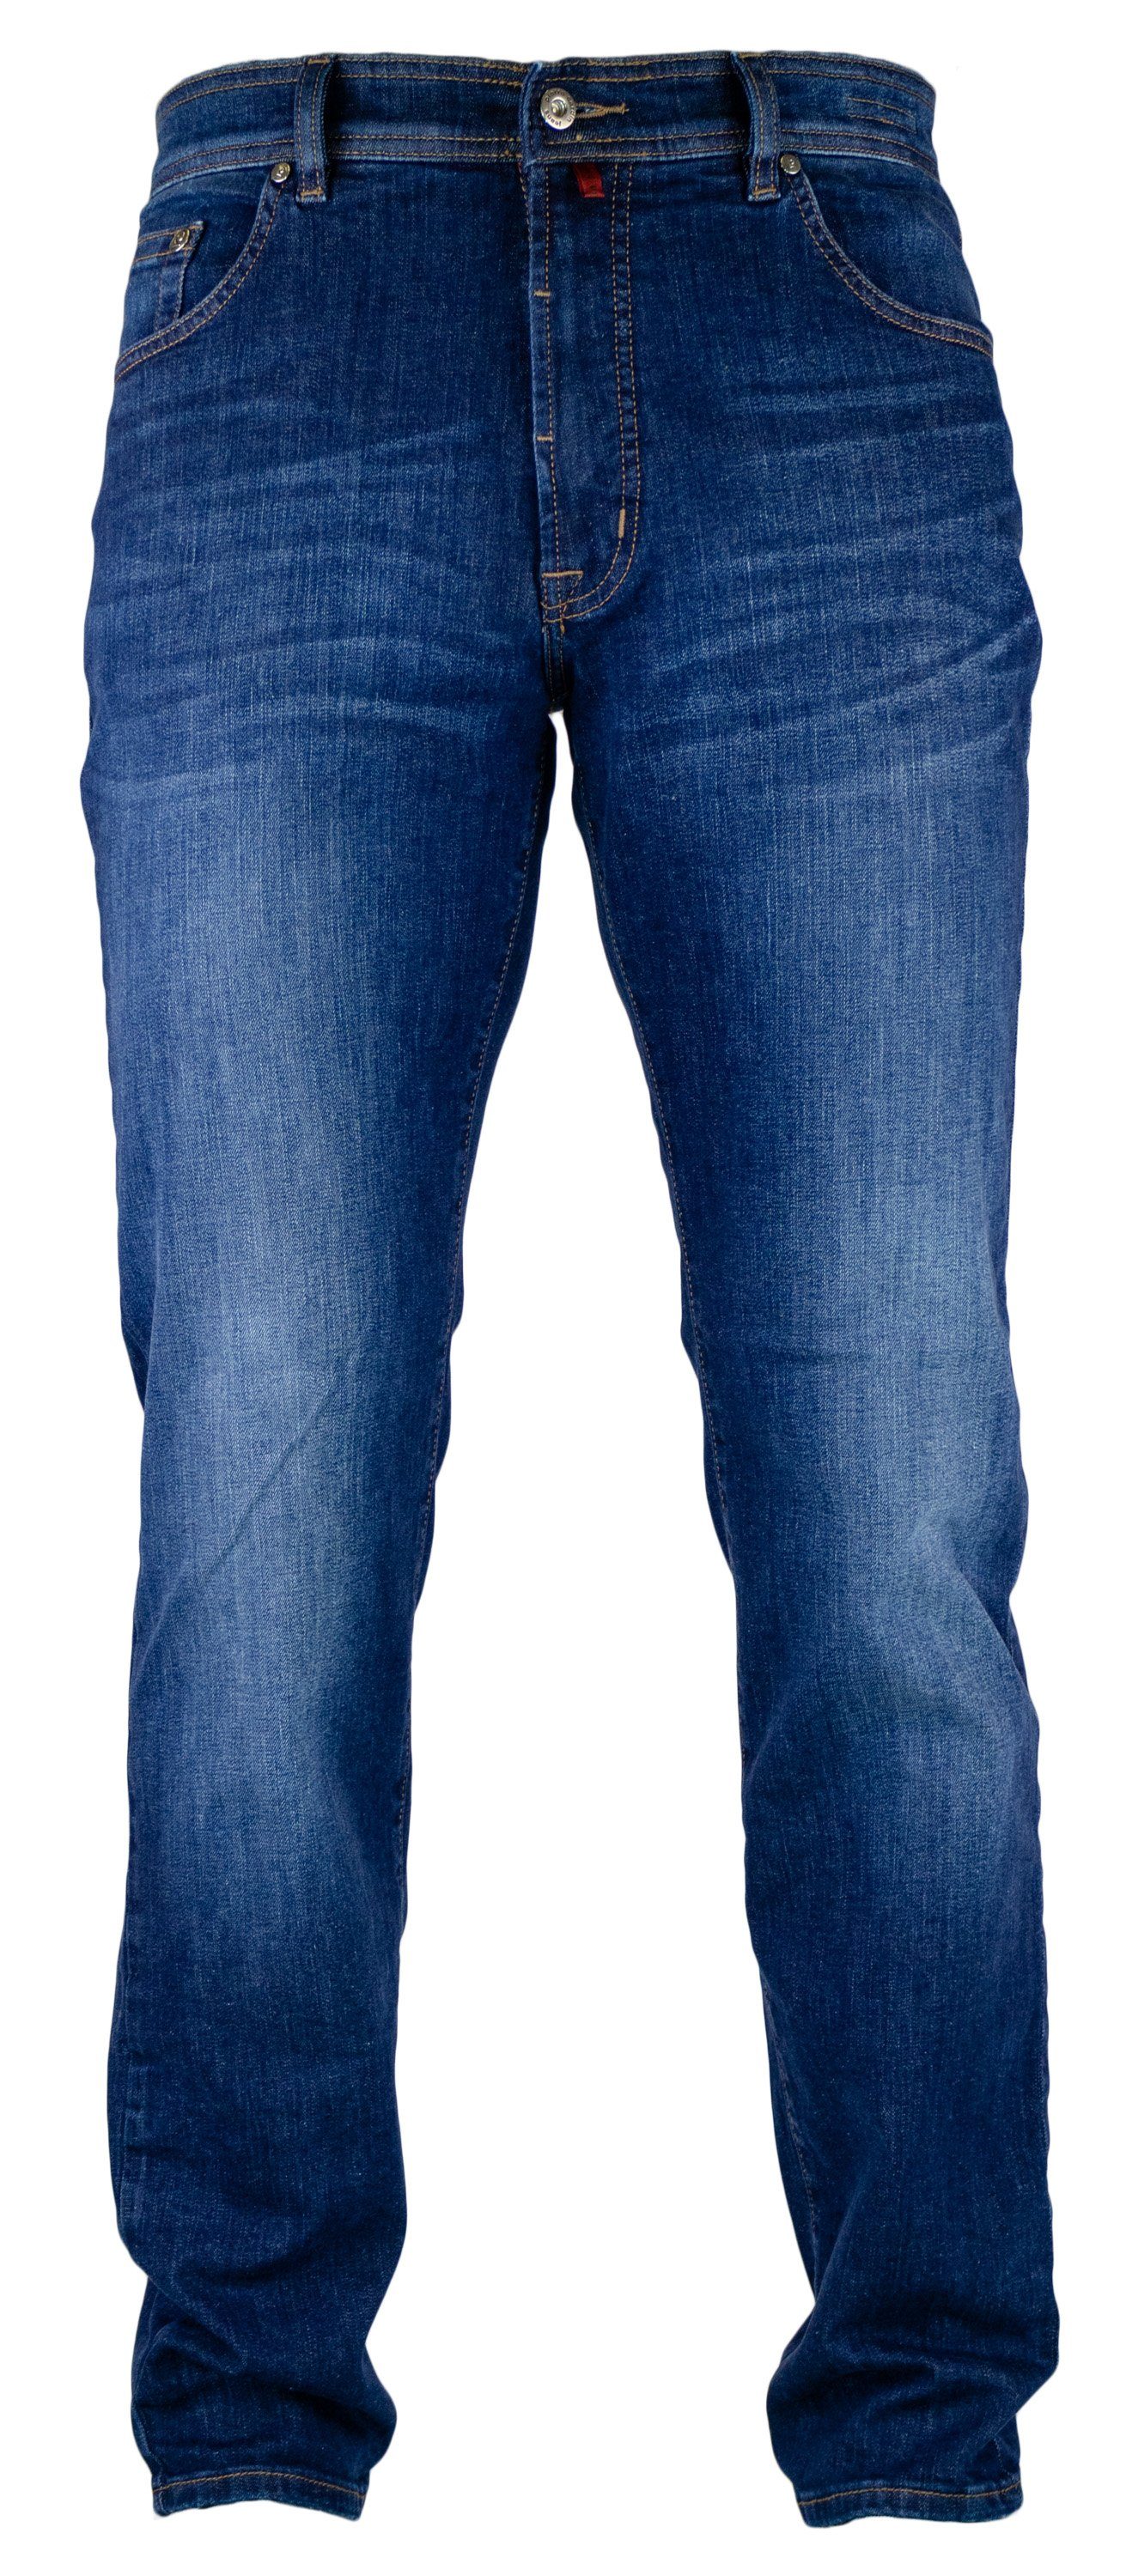 Pierre Cardin 5-Pocket-Jeans PIERRE CARDIN DIJON dark blue used 32311 7337.01